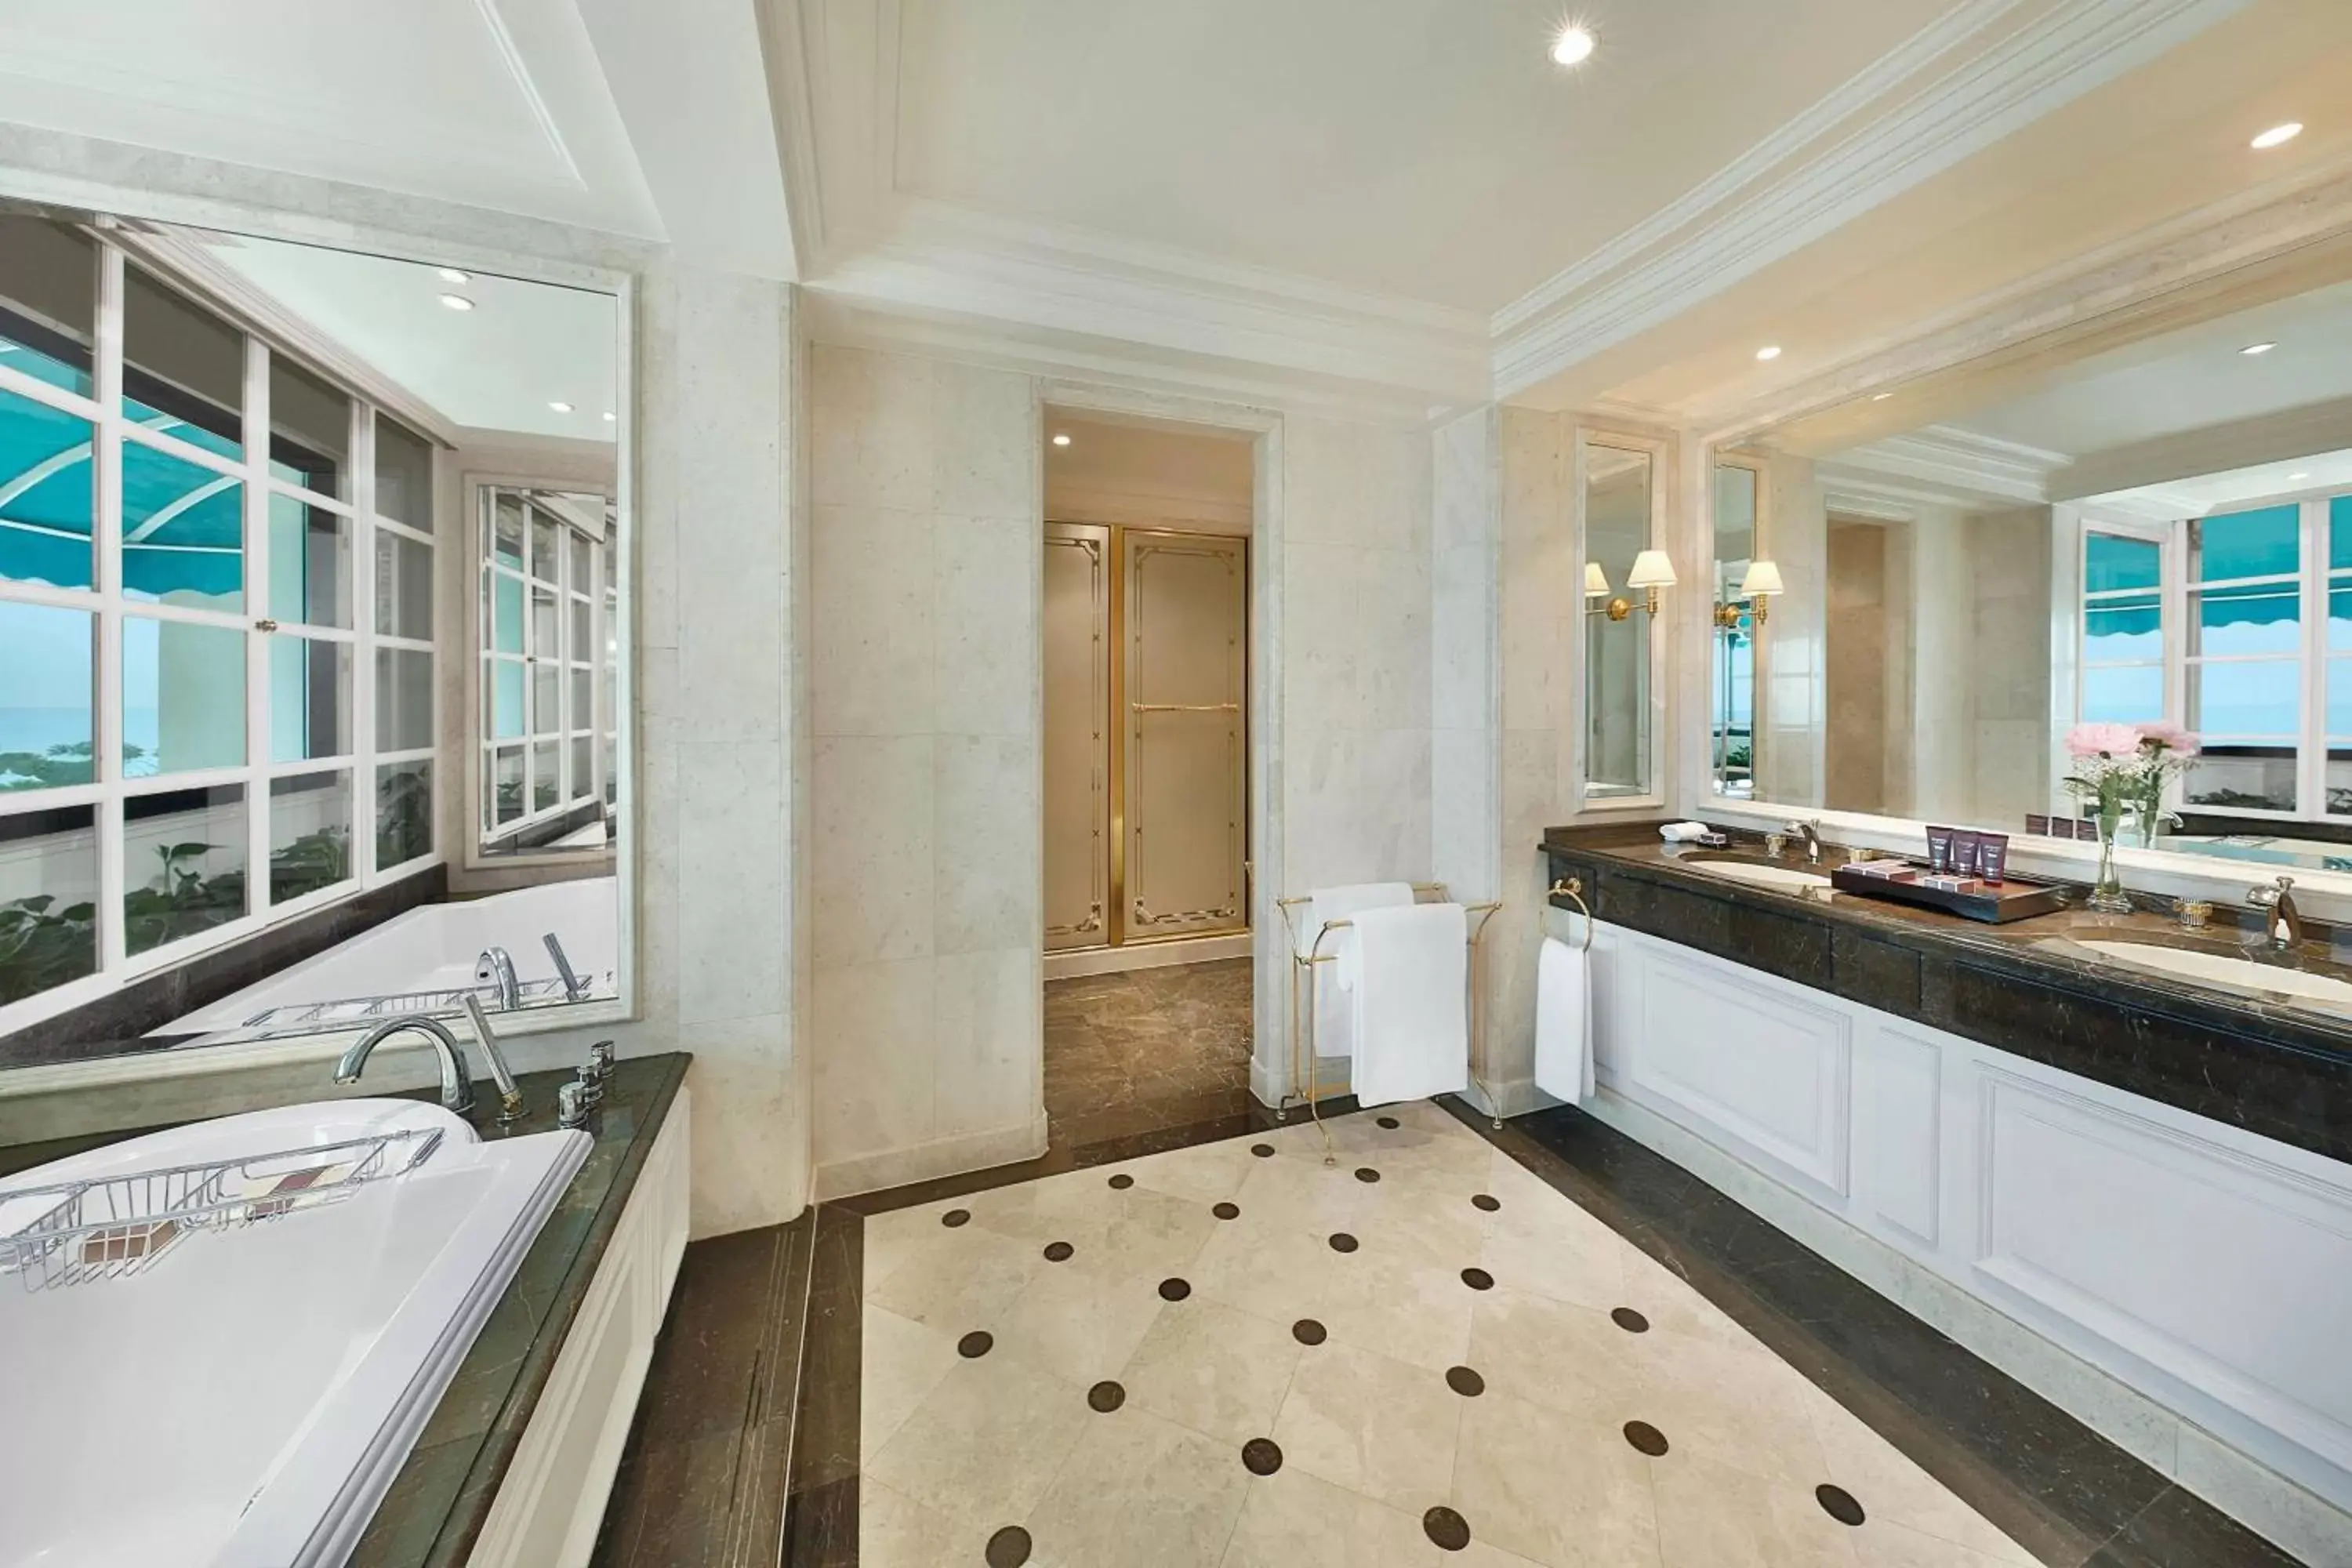 Bathroom in The Ritz-Carlton, Bahrain